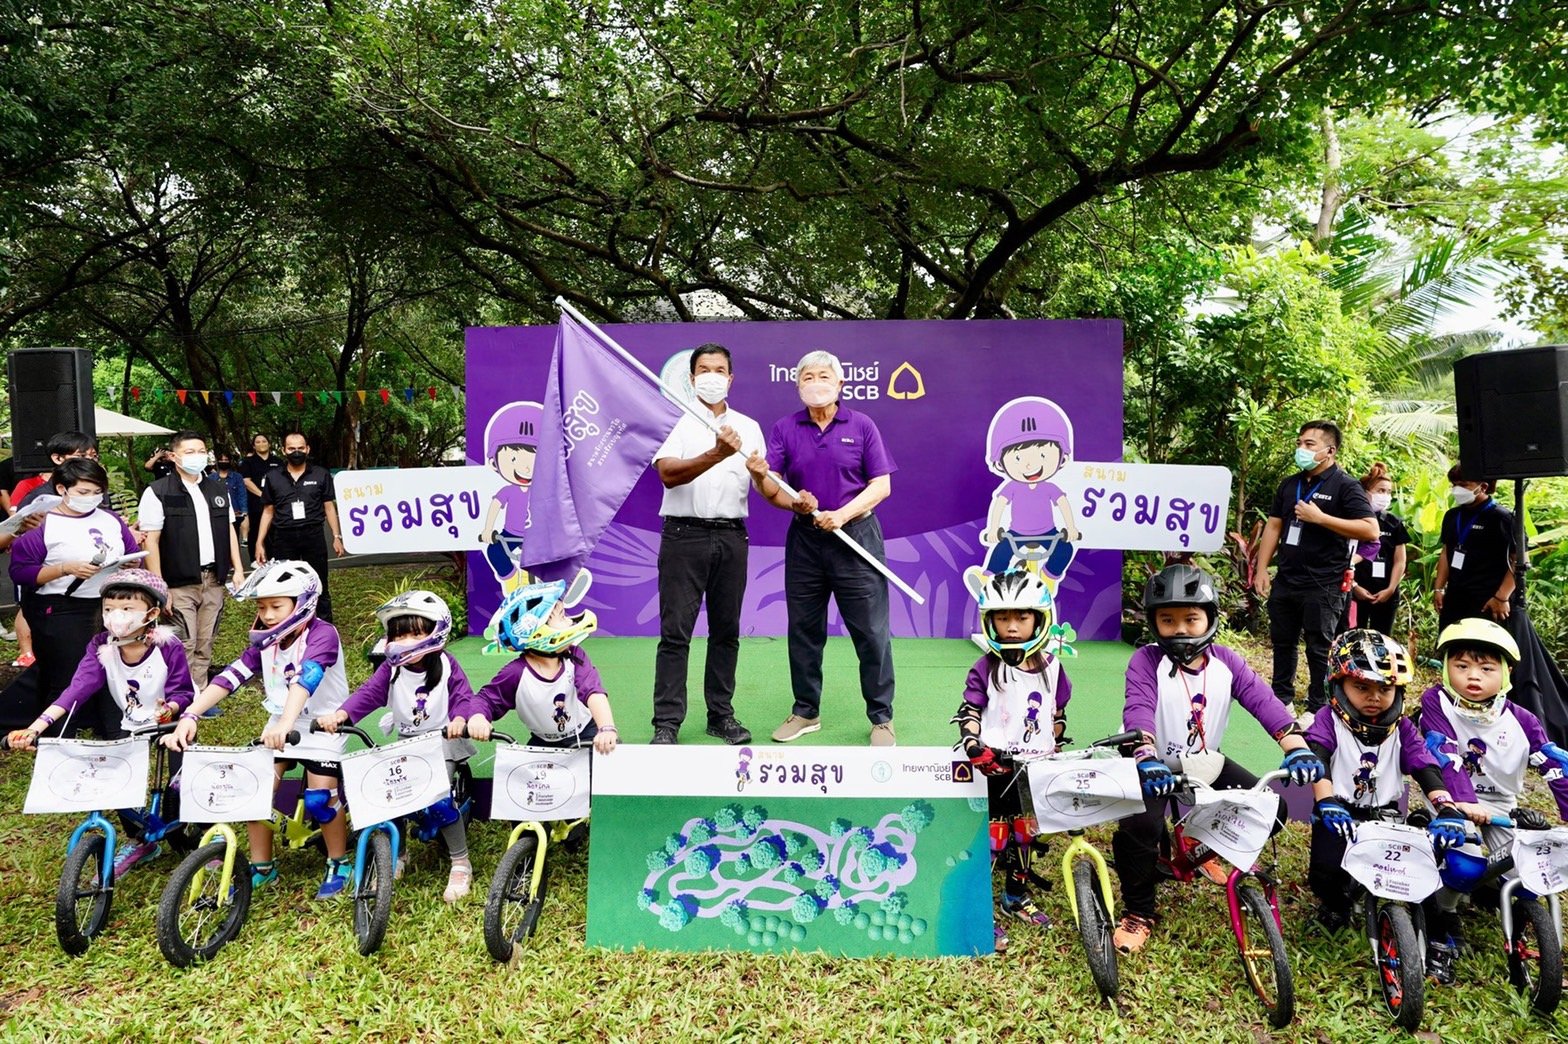 กทม. และไทยพาณิชย์ ร่วมเปิดสนามจักรยานขาไถสำหรับเด็ก แห่งแรกในสวนสาธารณะ กทม. ณ สวนวชิรเบญจทัศ